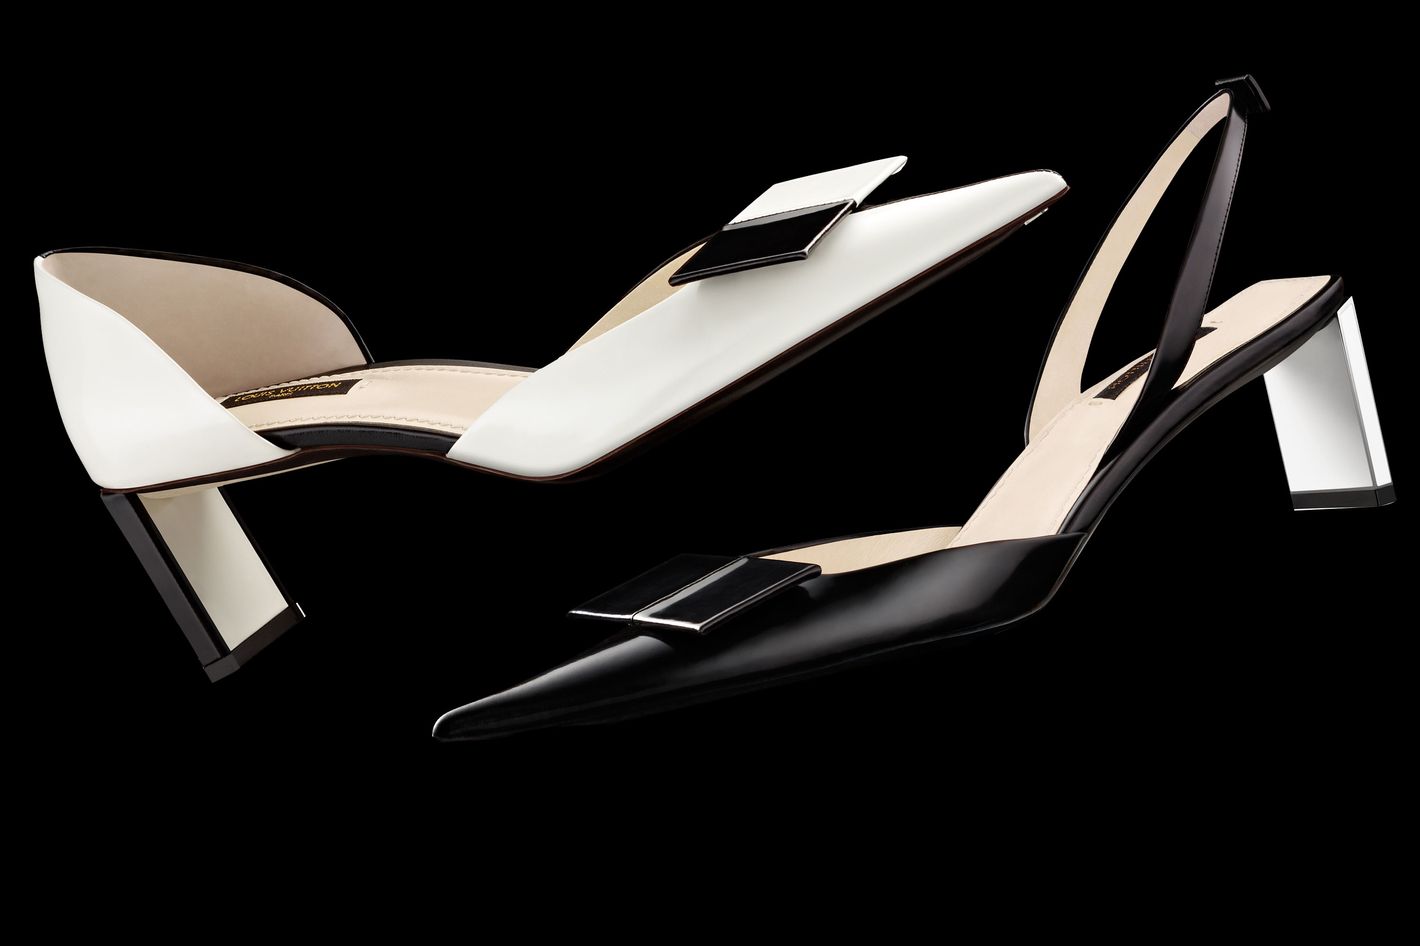 Louis Vuitton White Leather Pumps Shoes